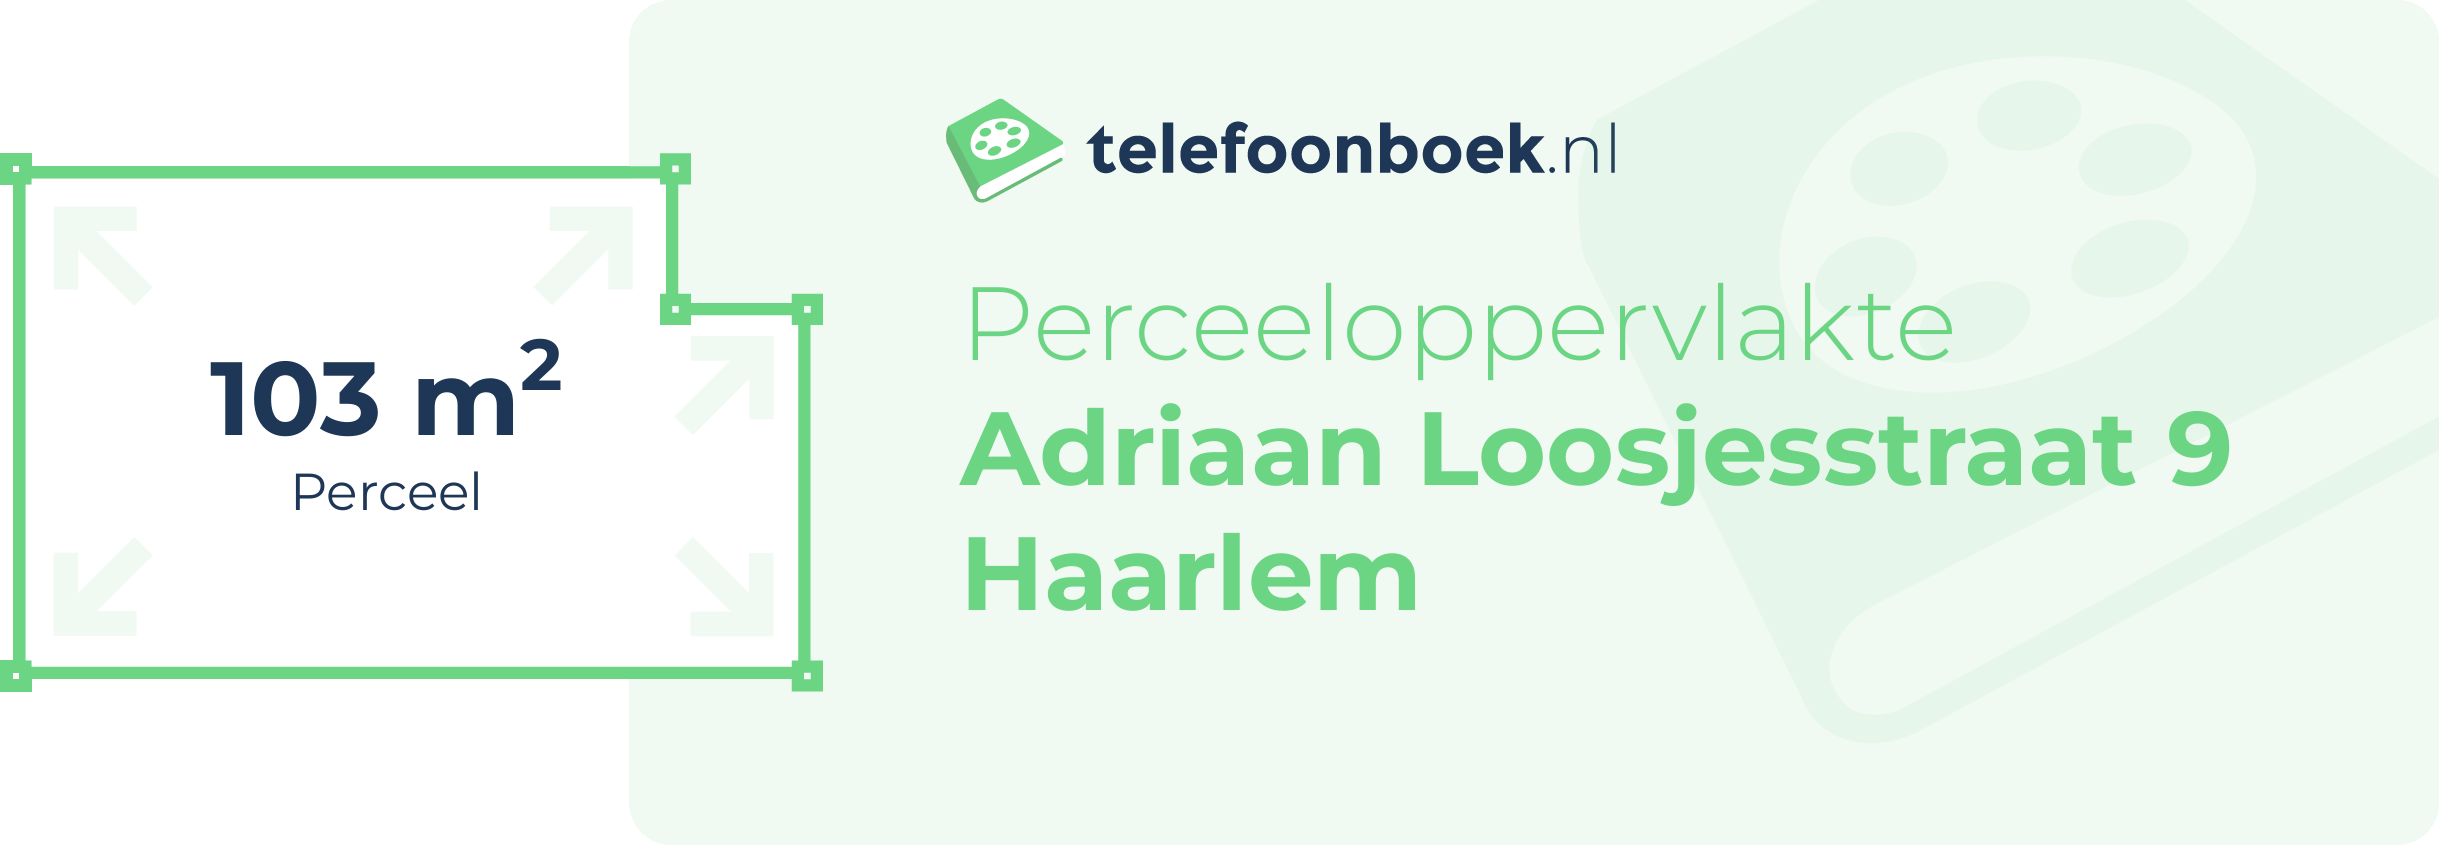 Perceeloppervlakte Adriaan Loosjesstraat 9 Haarlem